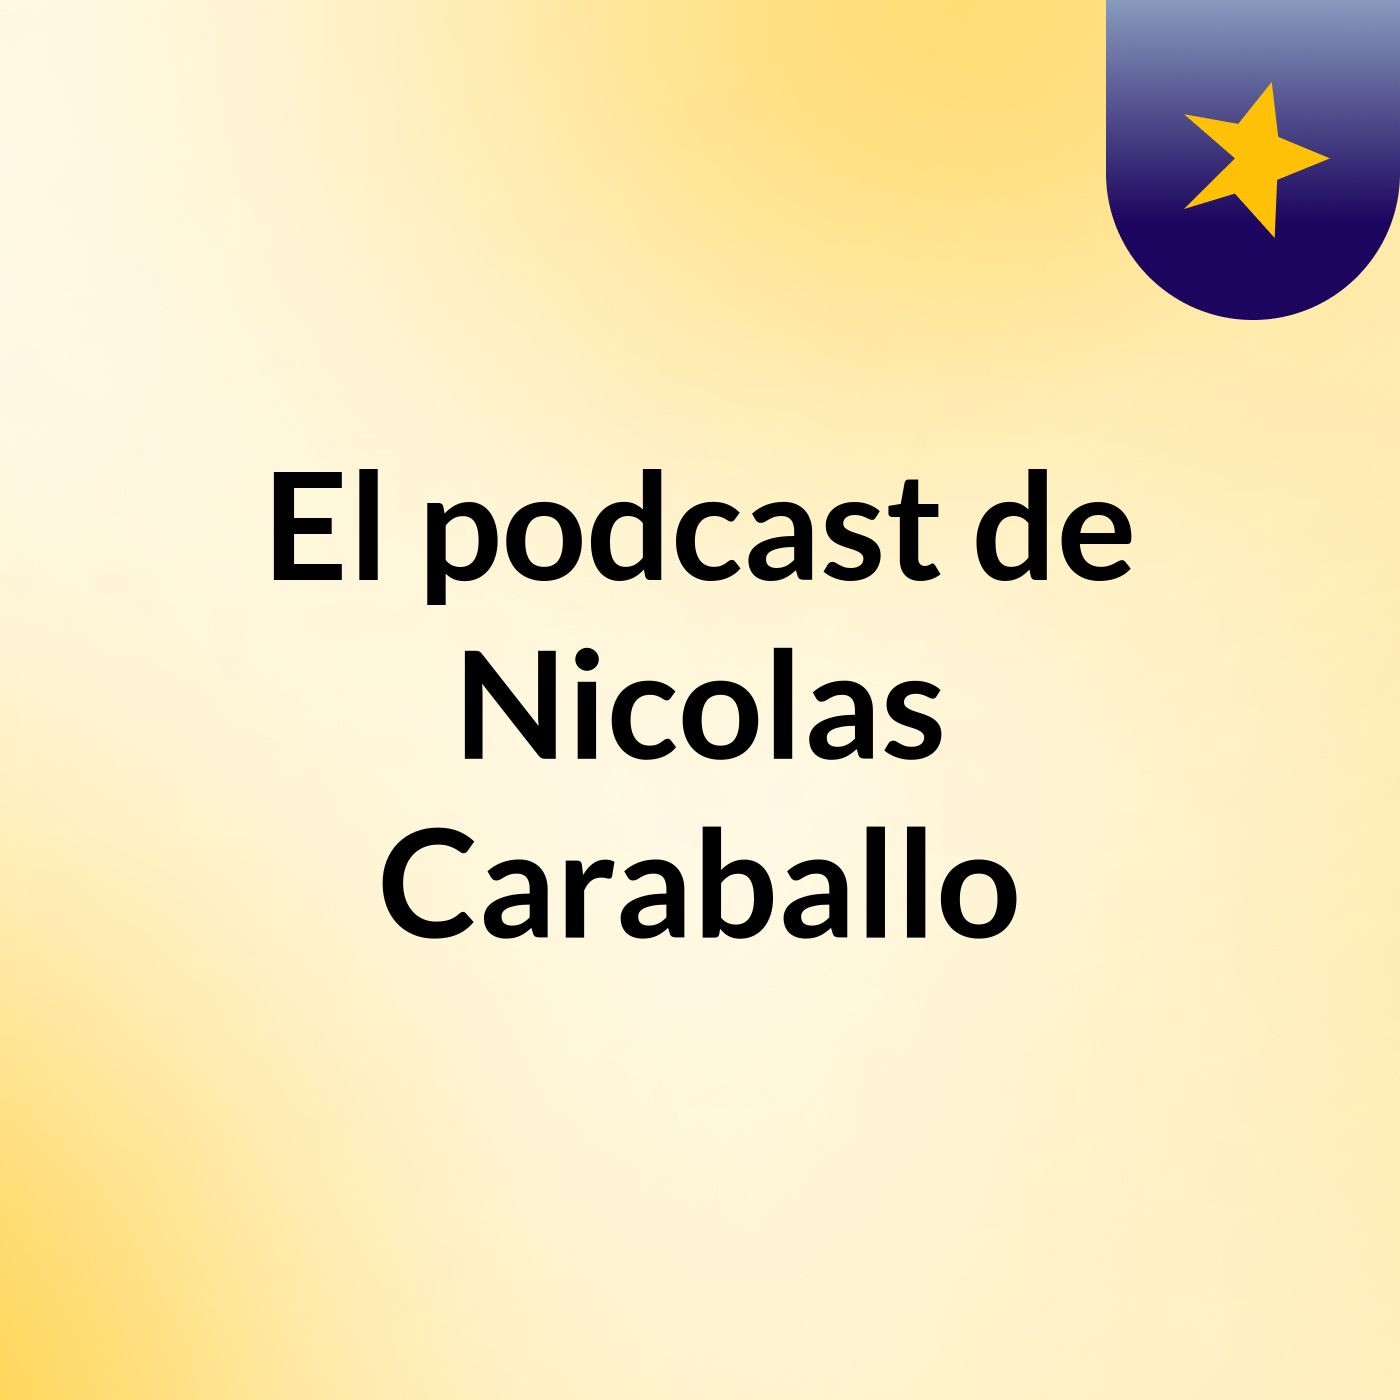 Episodio 22 - El podcast de Nicolas Caraballo